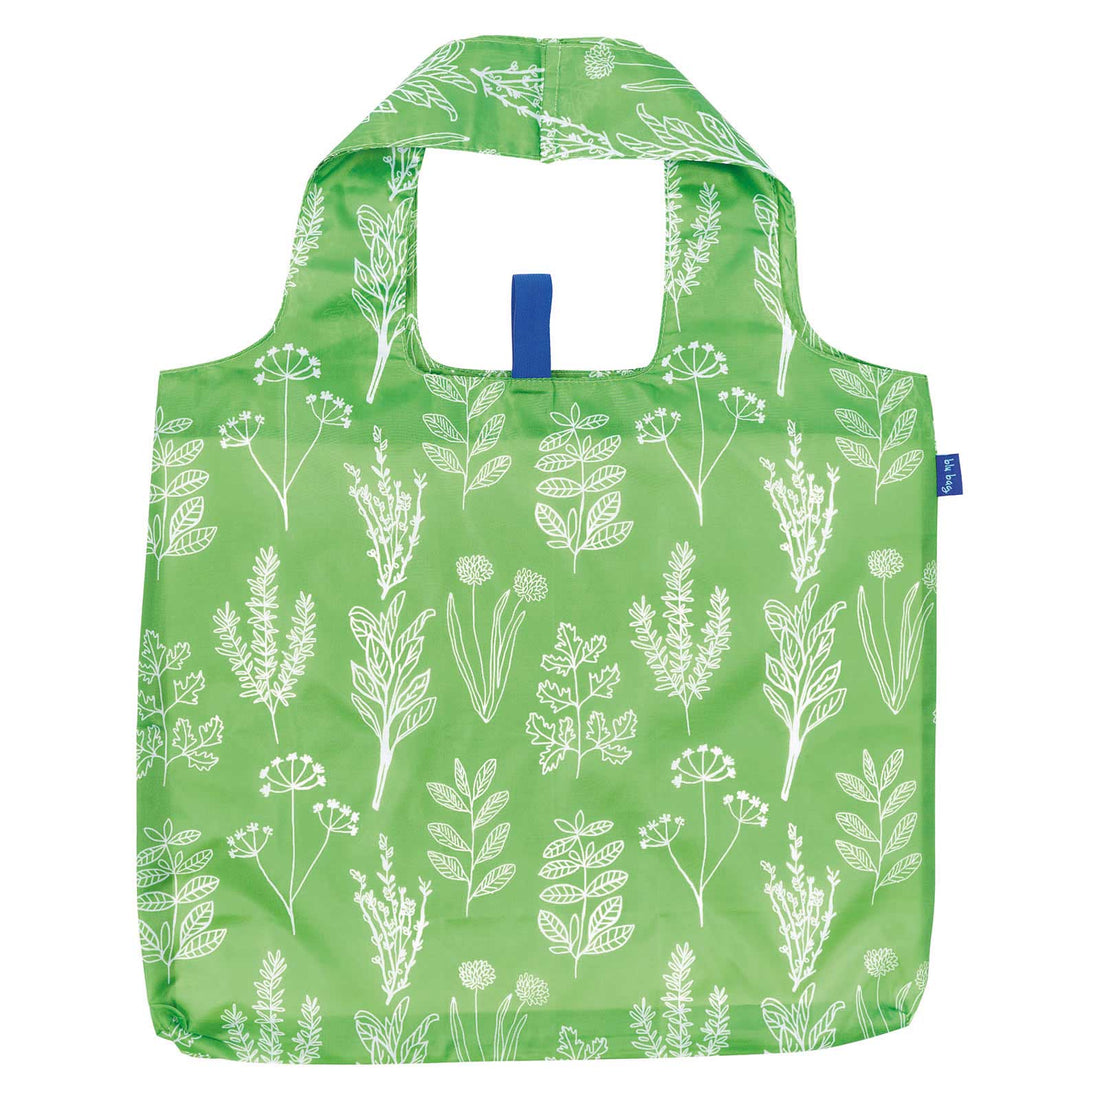 Herbs Green Blu Bag Reusable Shopping Bag - Machine Washable Reusable Shopping Bag - rockflowerpaper